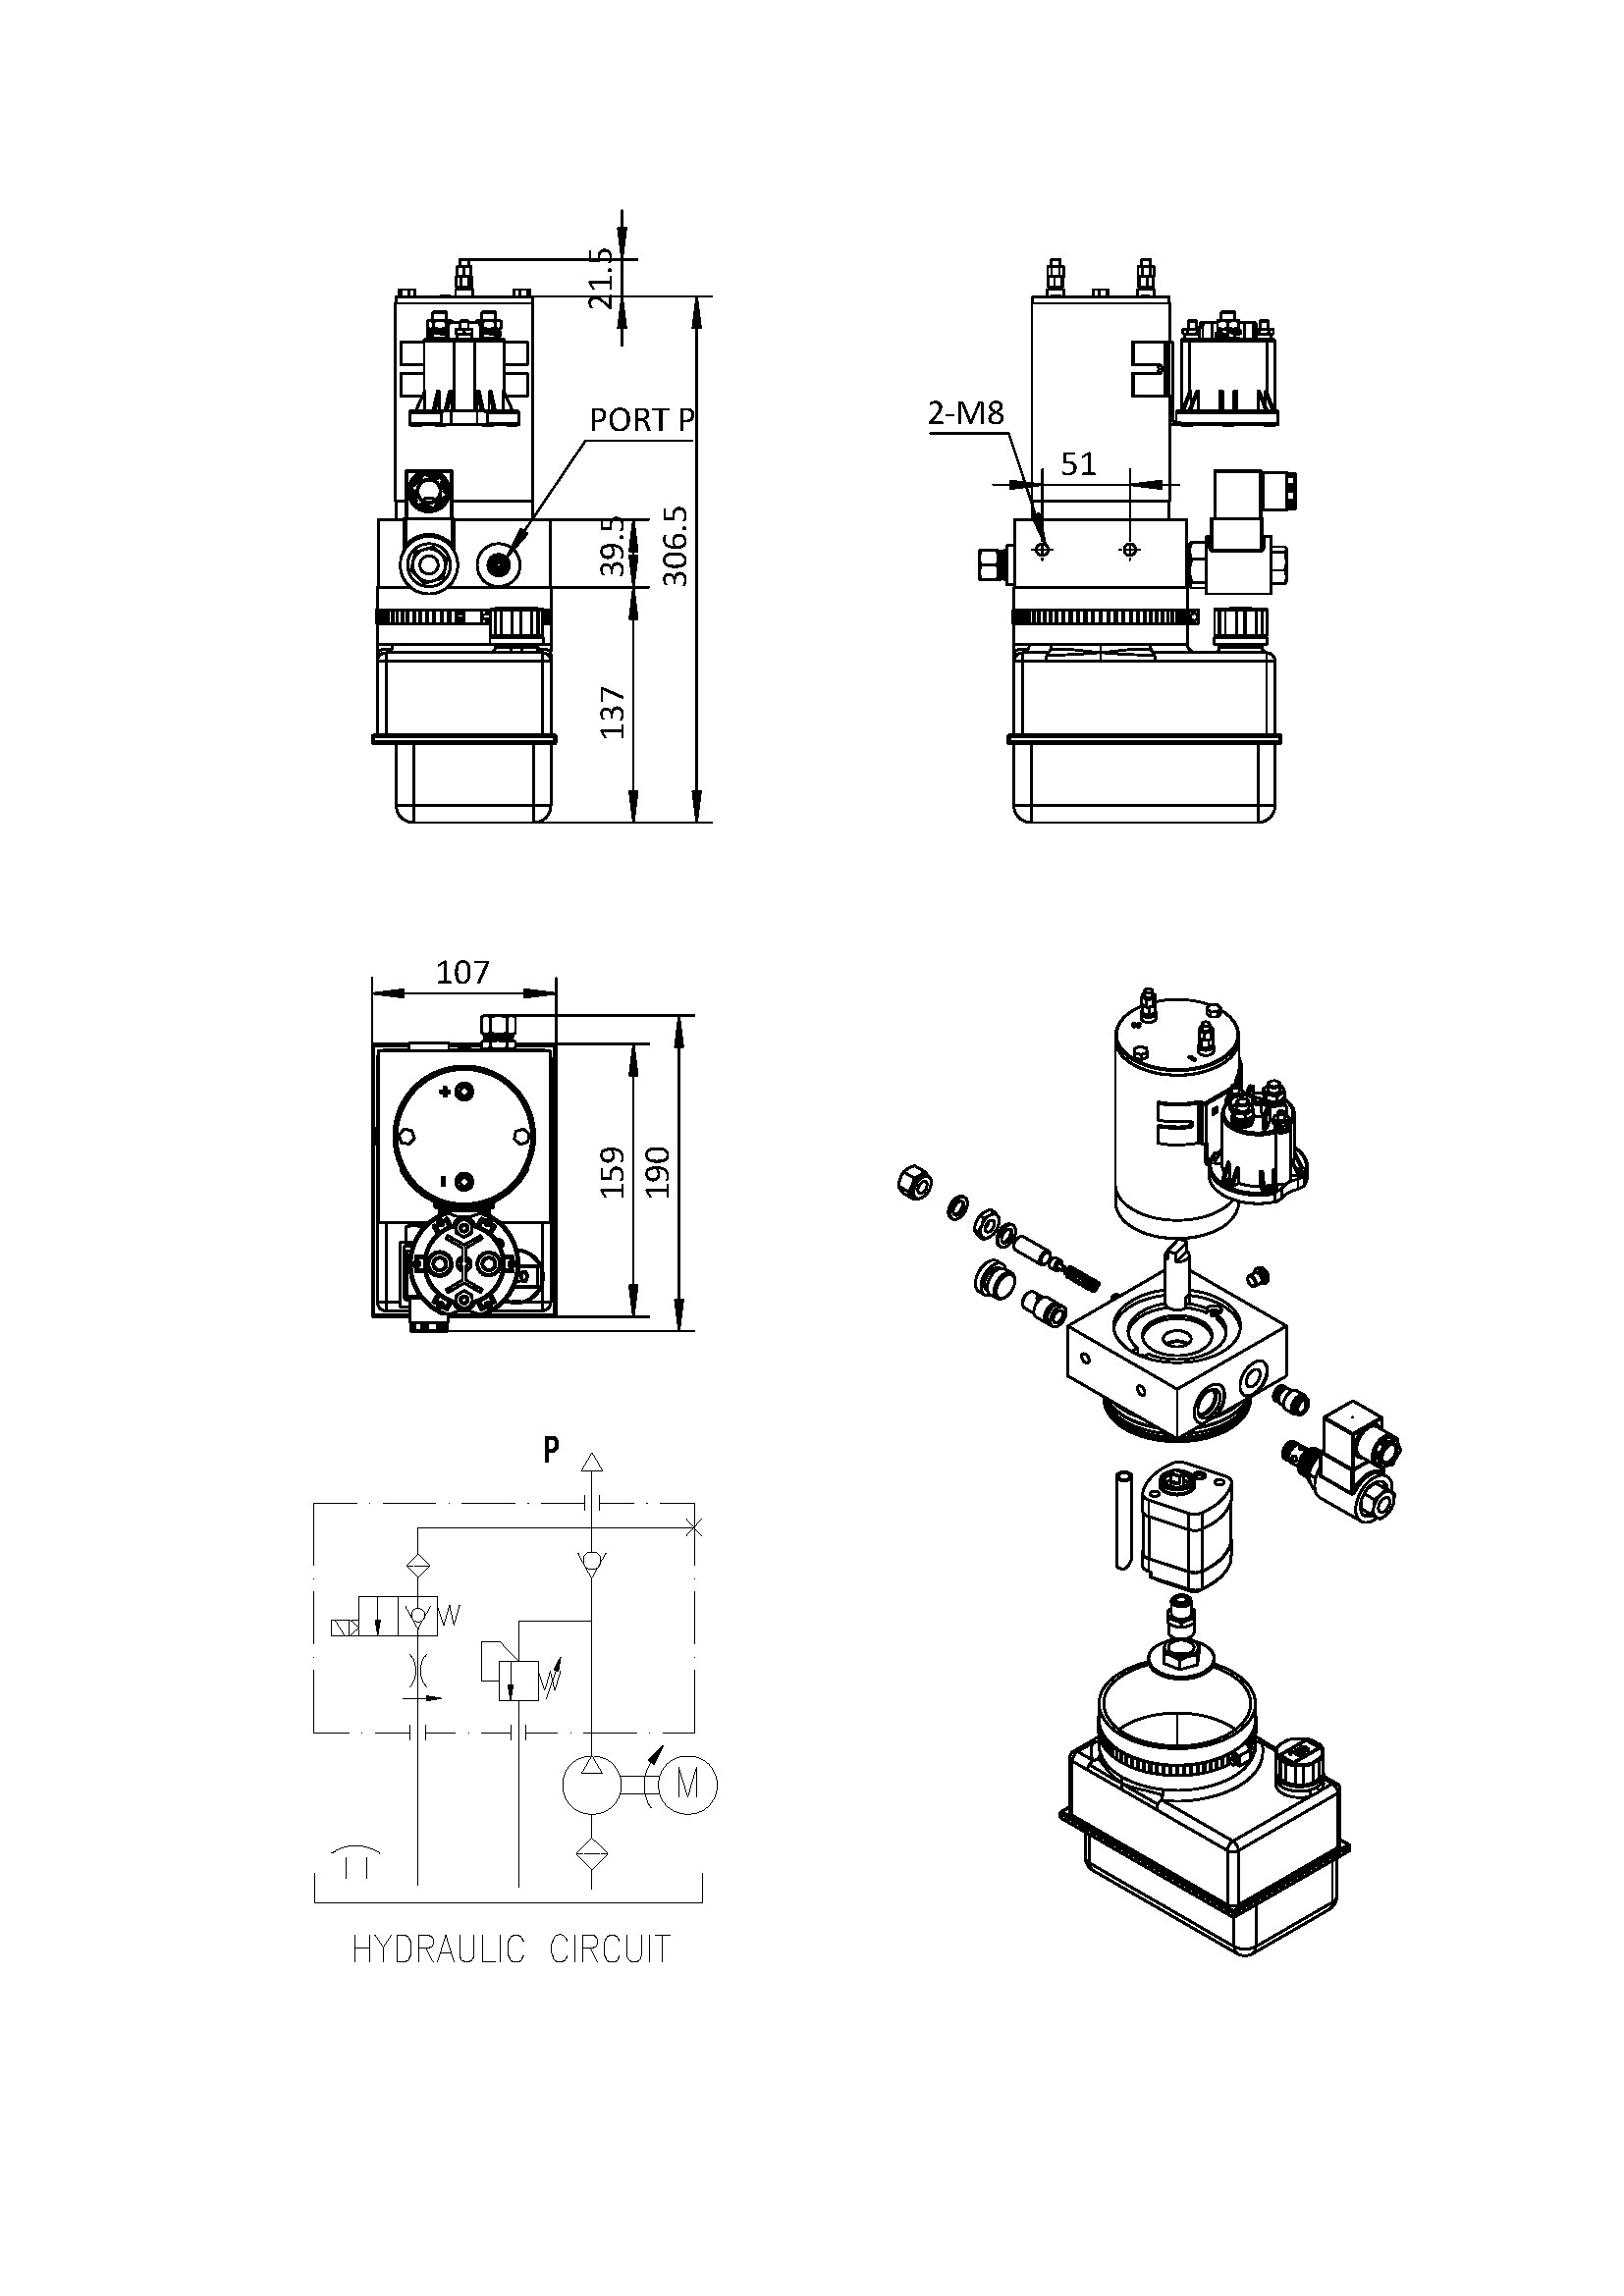 Hydraulic Pump Diagram Monarch Hydraulic Pump Parts solenoid Small 12v Power Unit Wiring Of Hydraulic Pump Diagram